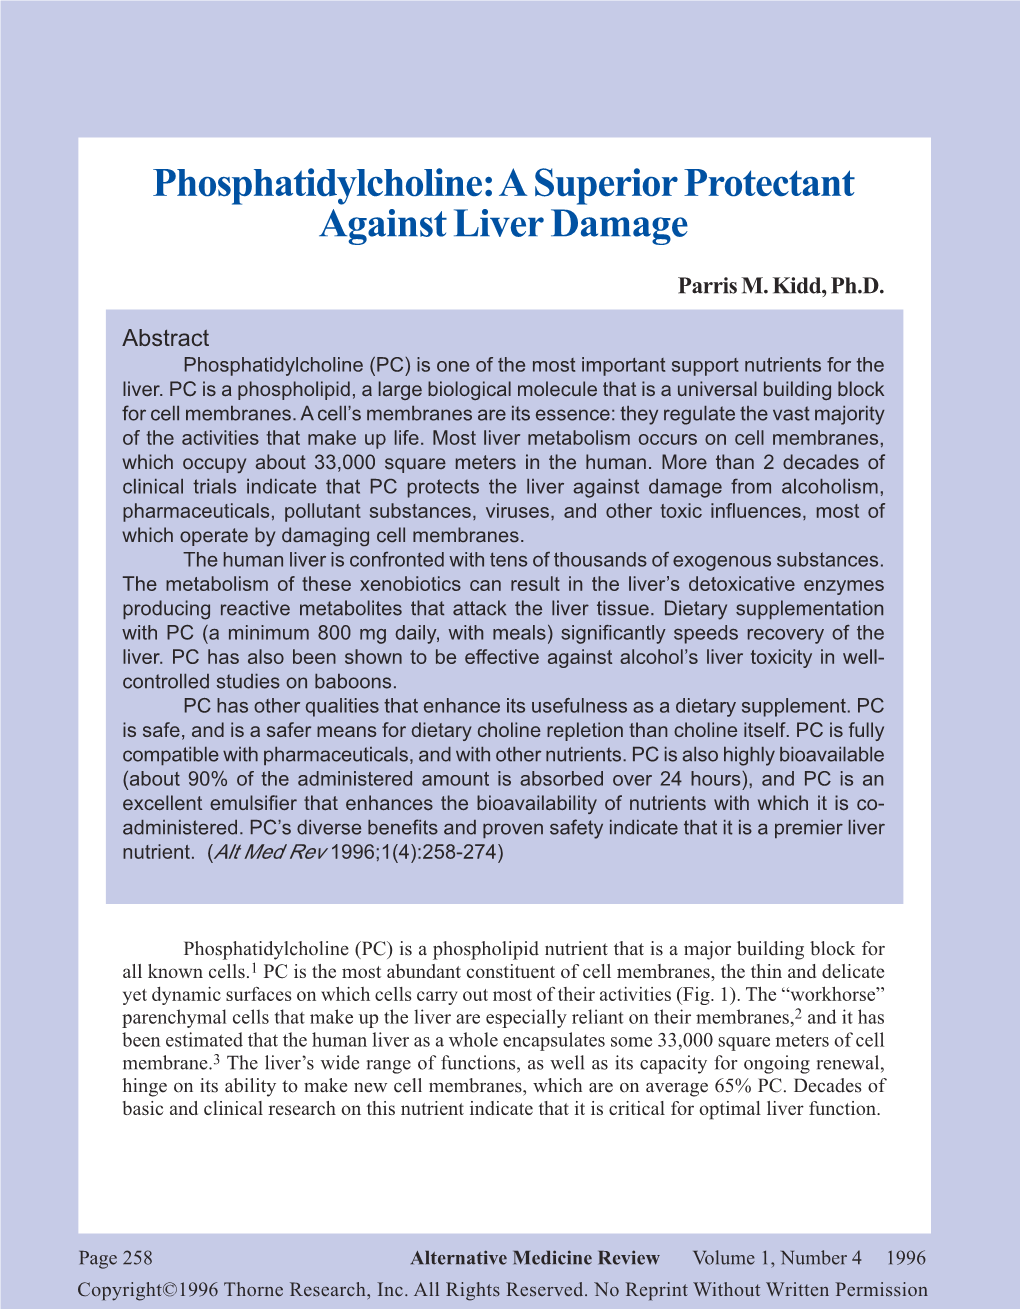 Phosphatidylcholine: a Superior Protectant Against Liver Damage